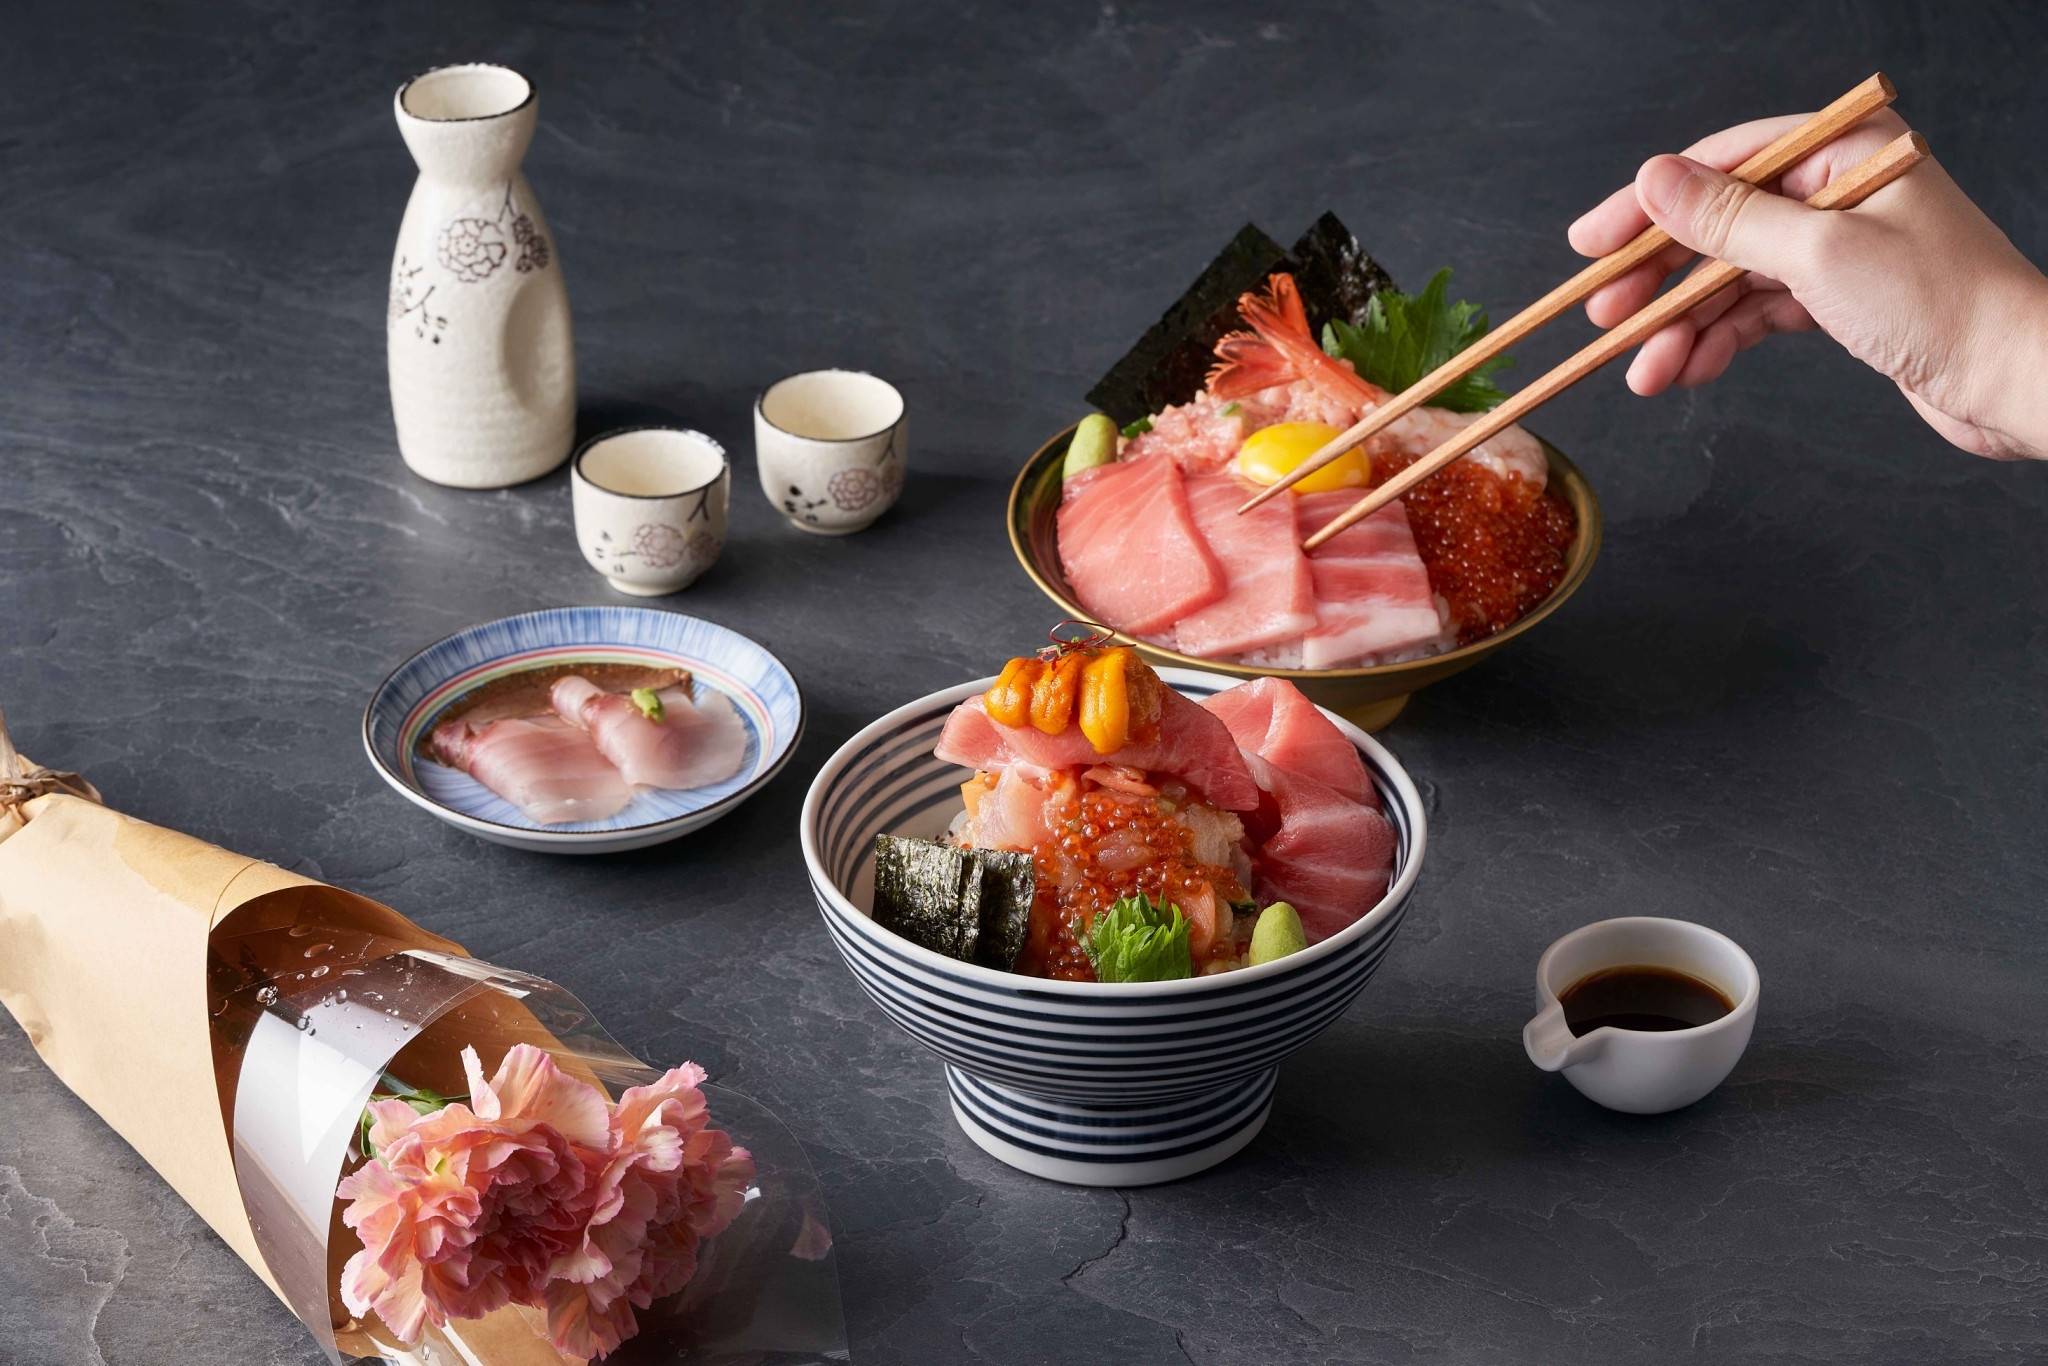 日本黑鮪堪稱是鮪魚中的夢幻逸品，又被稱為「海中黑金」在日本料理上占有不可取代的地位。４月到來黑鮪正當時，晶透如粉鑽般的迷人色澤，一抿即化於味蕾，讓一眾老饕們沈醉黑鮪的鮮美滋味。連續七屆榮獲日本海鮮丼金賞獎、日本權威食評網站食べログ（Tablog）評比排名東京TOP 1海鮮丼品牌－日本橋海鮮丼辻半（TSUJIHAN），將於4/13(四)以日本黑鮪為強棒主打，推出台灣獨家日本黑鮪珠寶盒及海鮮丼，而母親節也即將到來，想要寵愛摯親家人的老饕們，不妨來日本橋海鮮丼辻半享受一場絢爛輝煌的日本黑鮪季頂級盛宴。